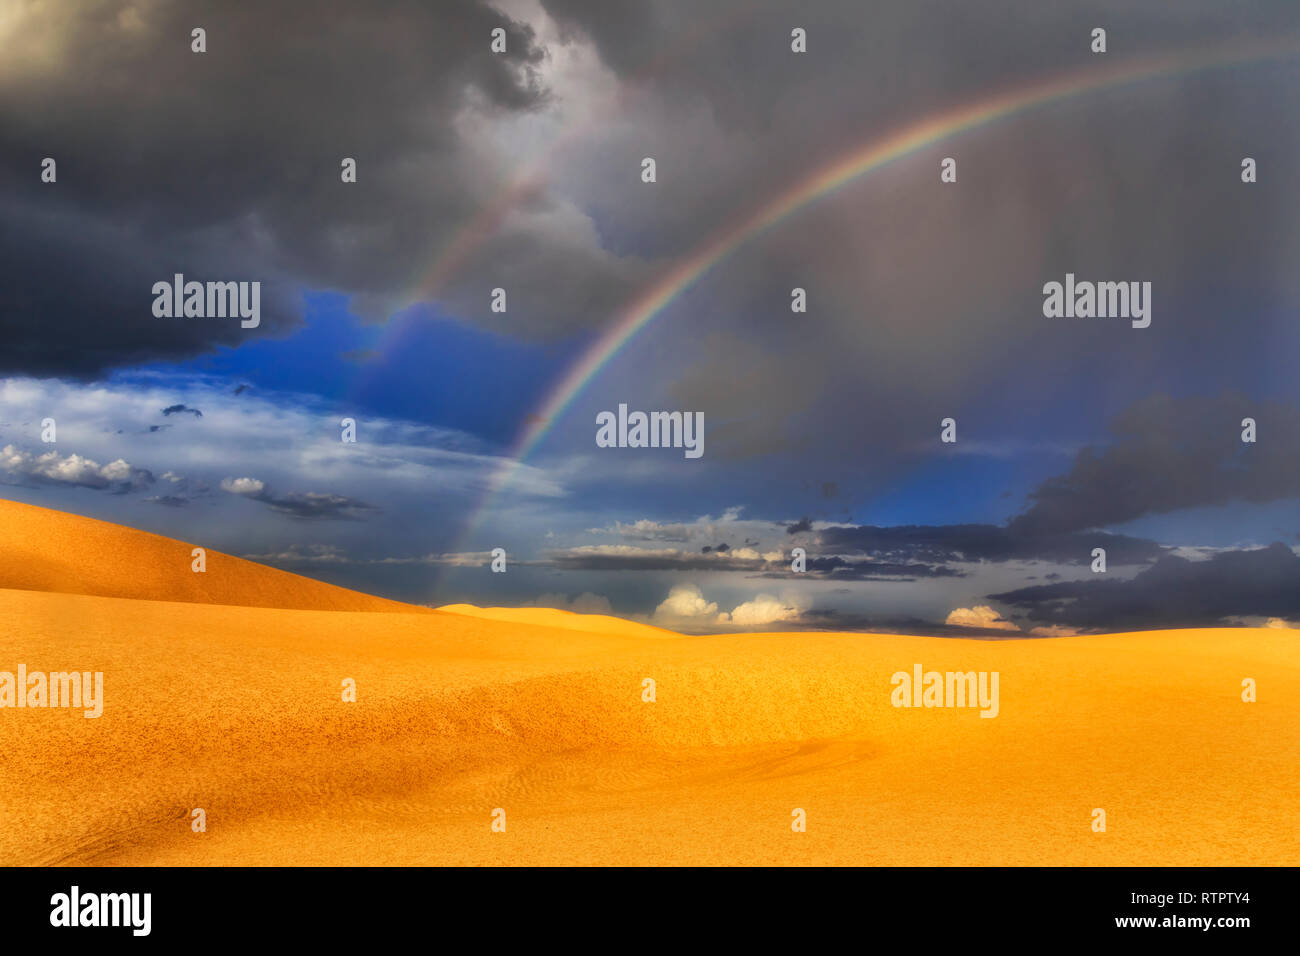 Tormenta de lluvia y arco iris sobre las dunas de arena del desierto en Stockton Beach en Australia - moody paisaje del parque nacional. Foto de stock